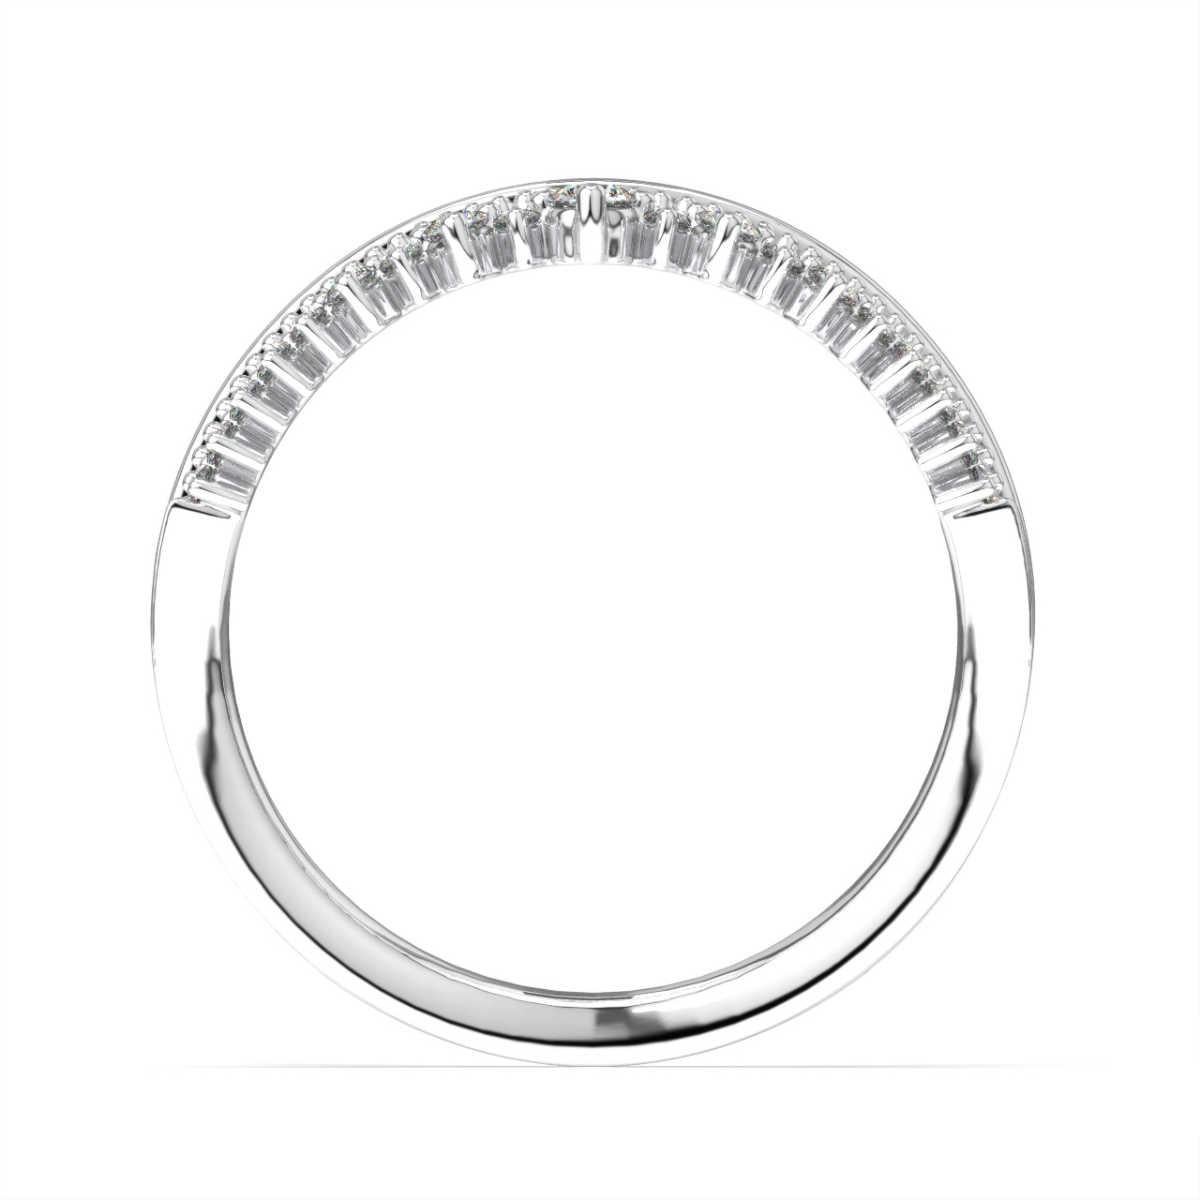 Dieser zarte Ring ist mit 19 runden Brillanten in Mikrozackenfassung besetzt. Zwischen dem Diamanten und dem Metall befindet sich eine zarte Maserung. Erleben Sie den Unterschied!

Einzelheiten zum Produkt: 

Farbe des zentralen Edelsteins: